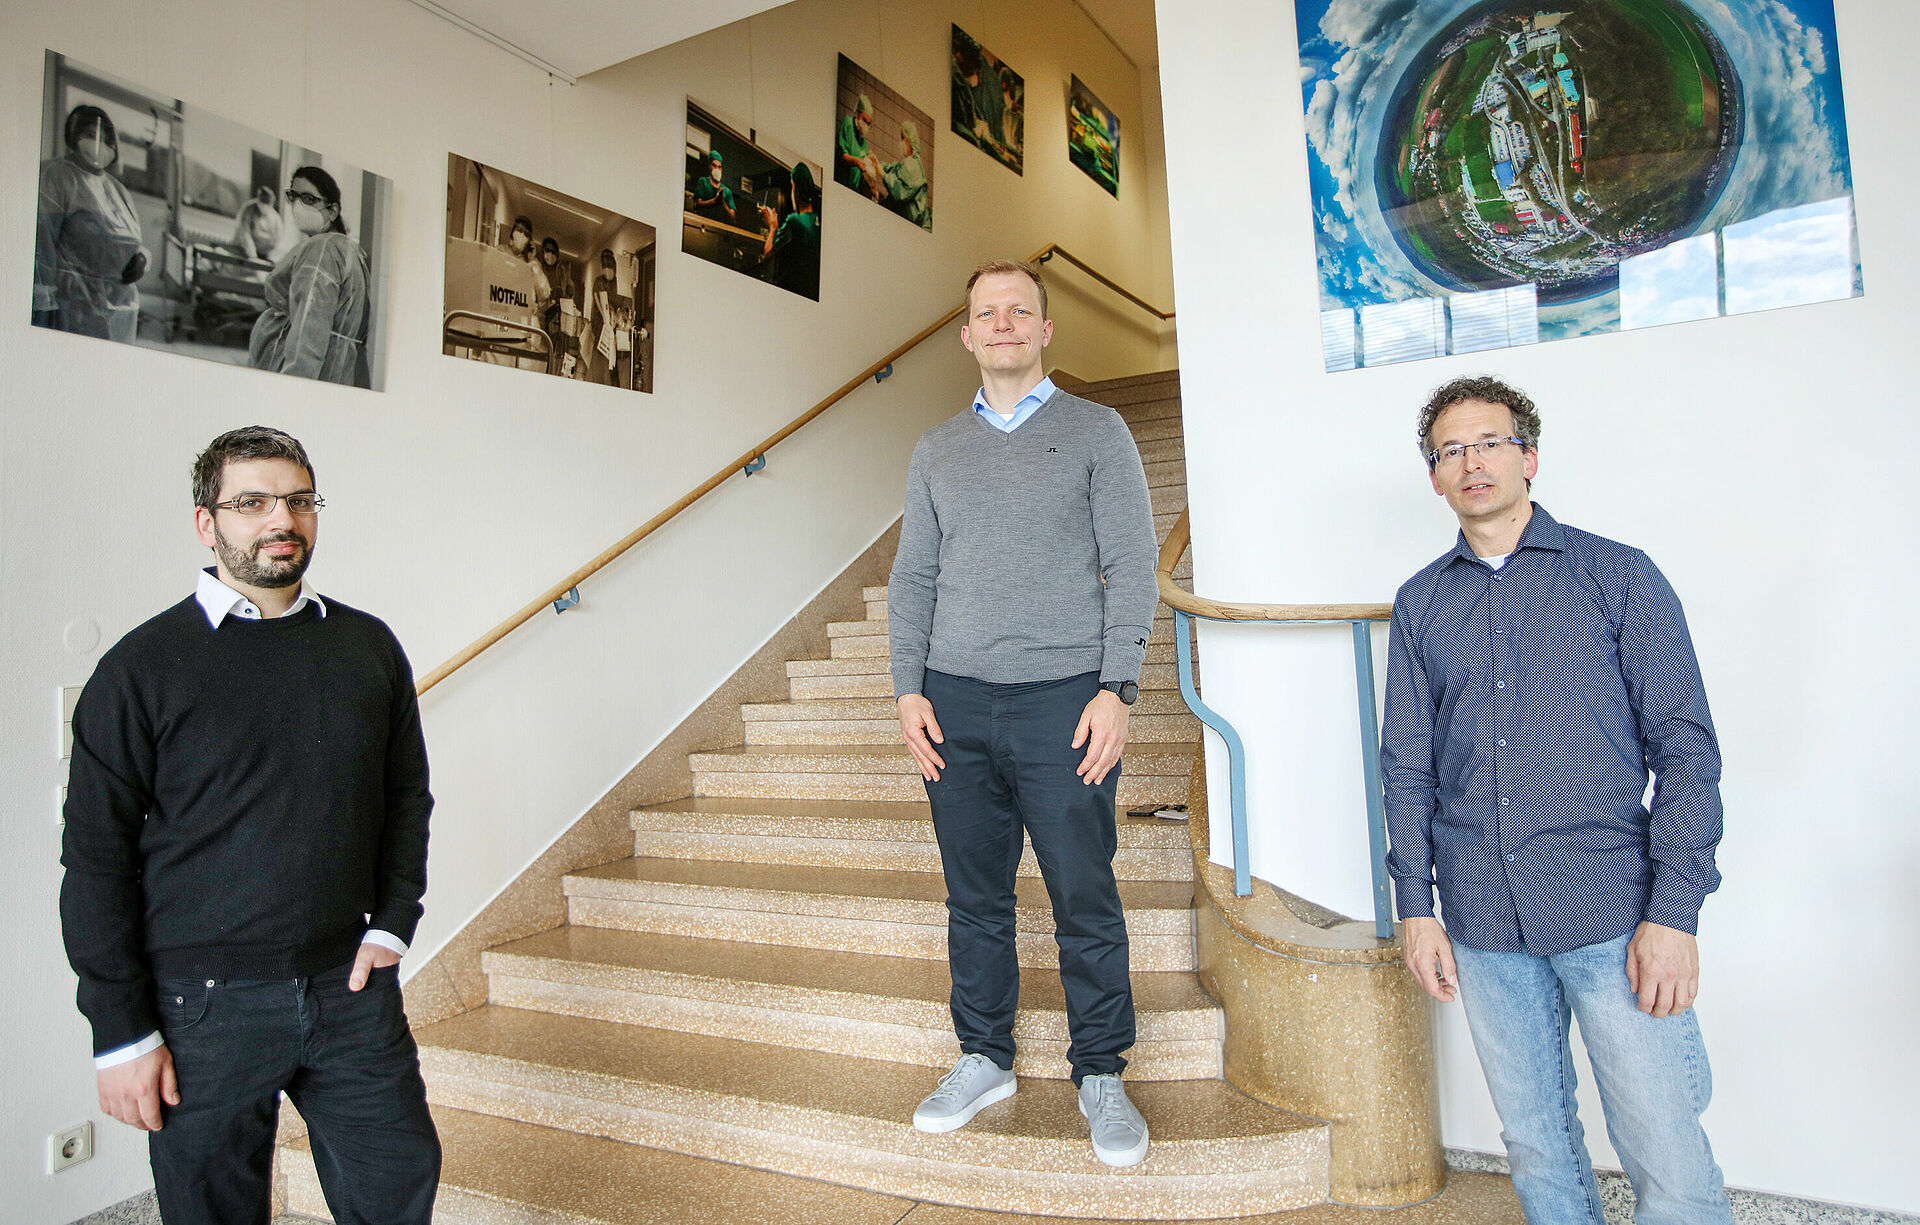 Drei Männer stehen in einem mit Bildern geschmückten Treppenhaus